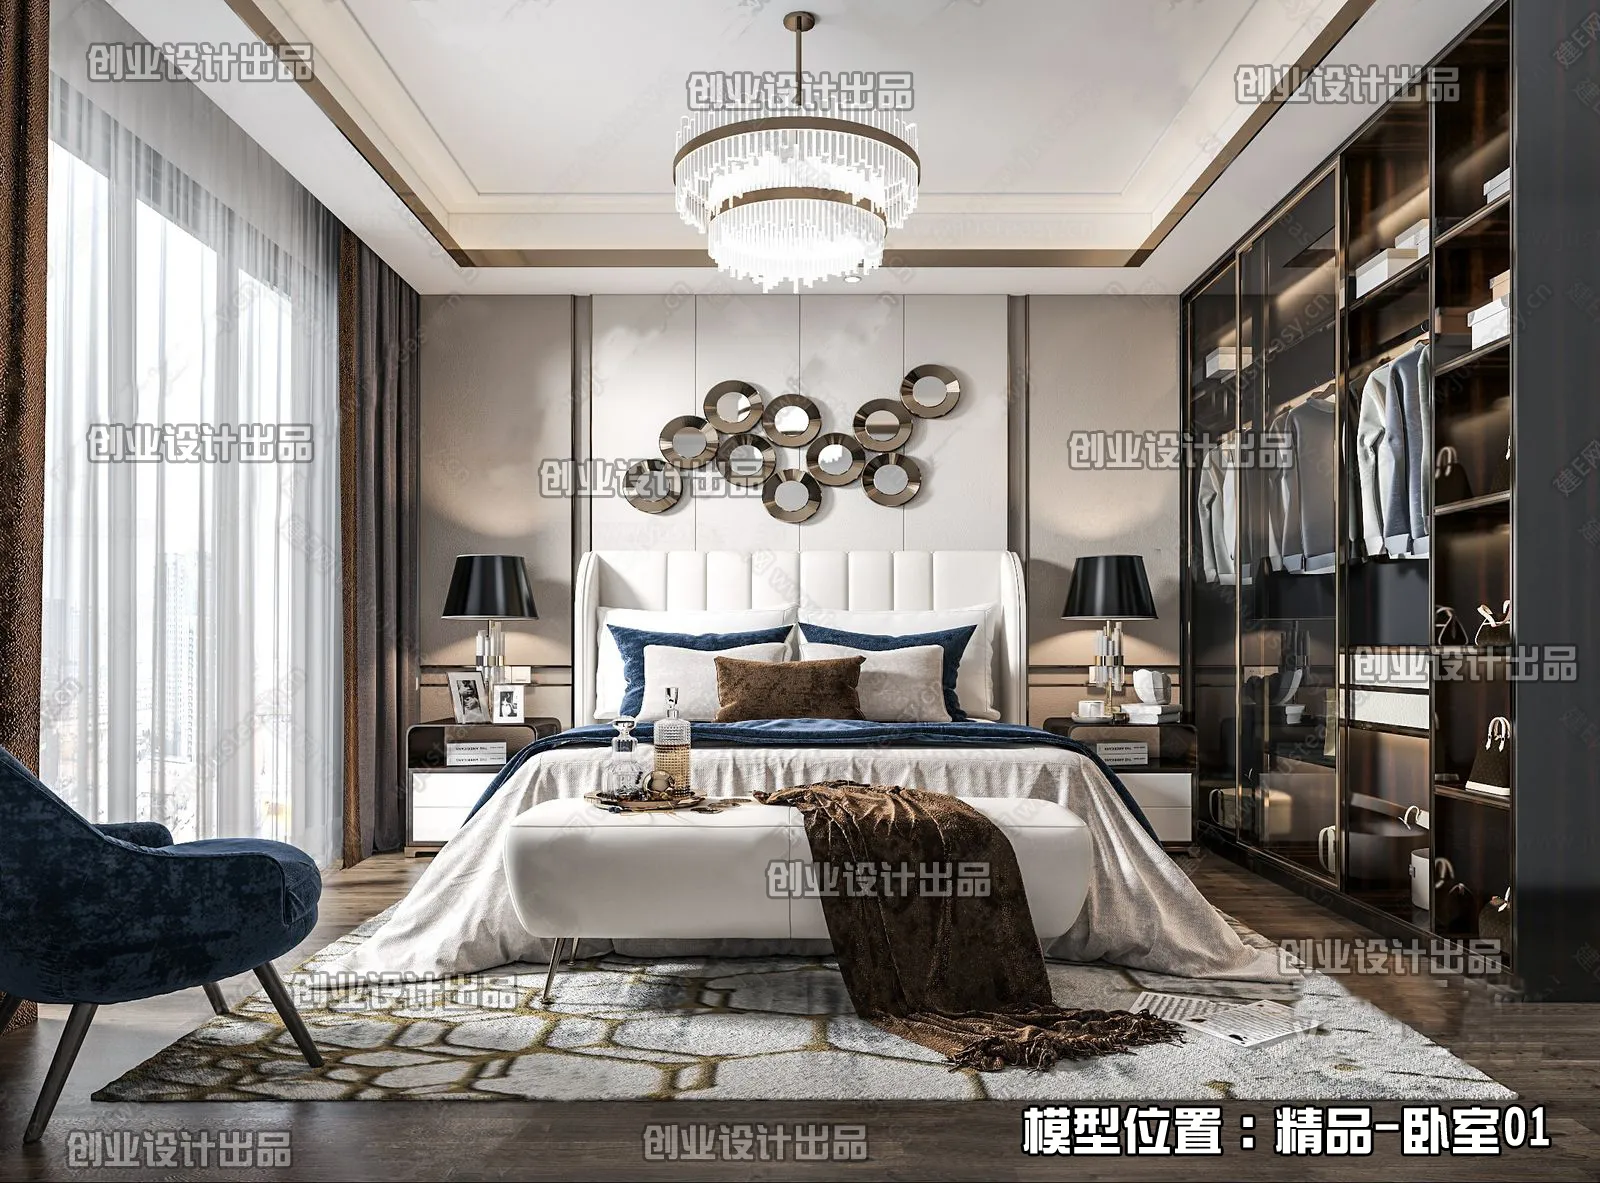 Bedroom – Modern Interior Design – 3D Models – 081